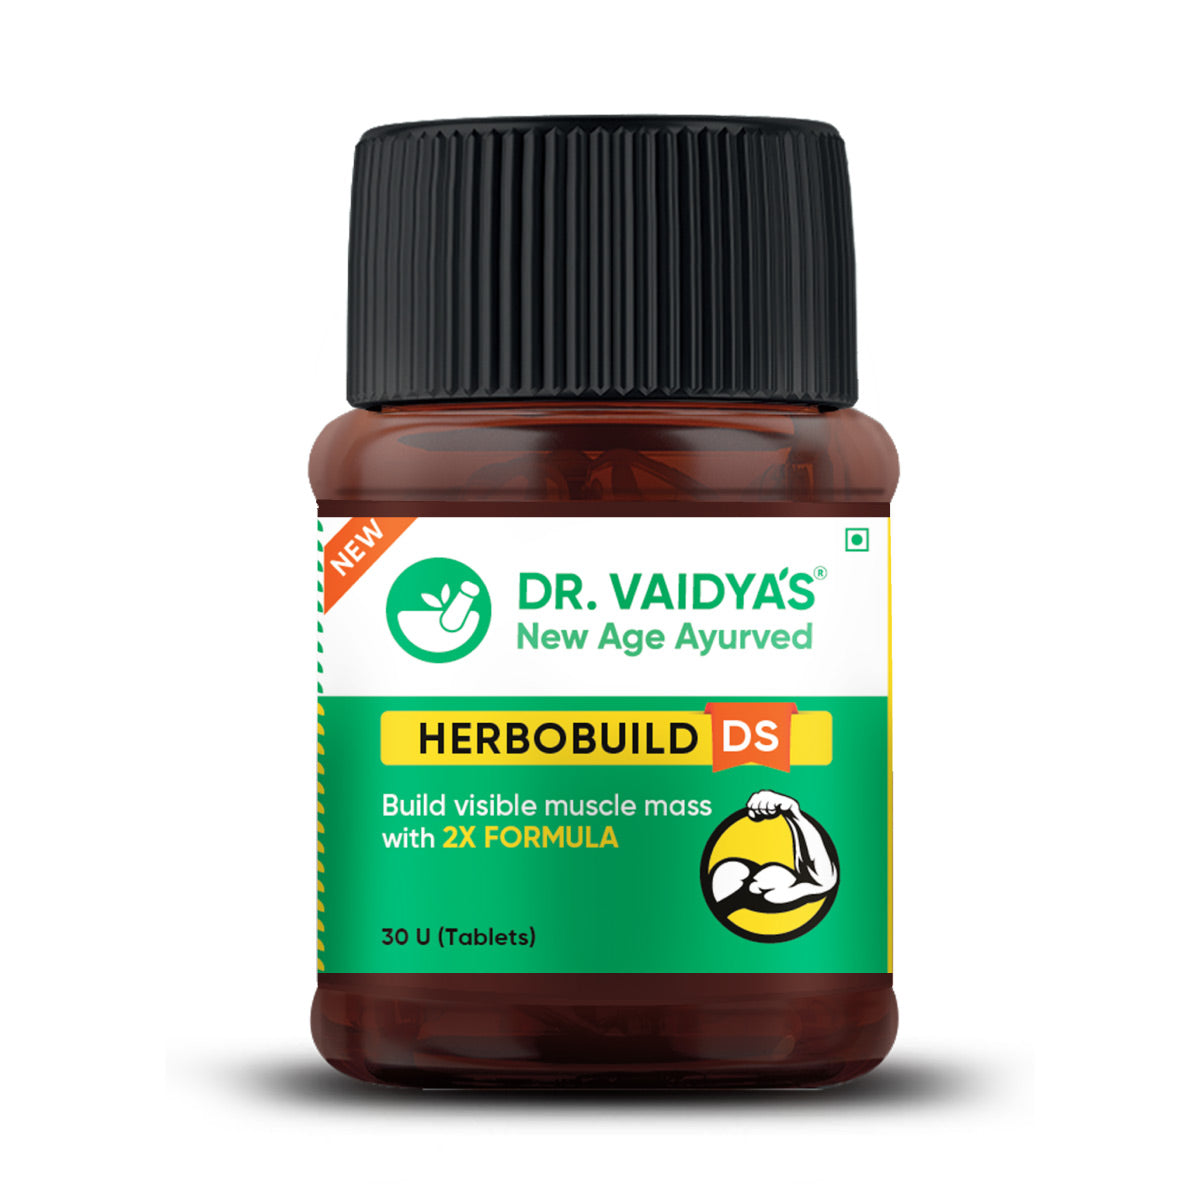 Dr. Vaidya's Herbobuild DS - Double Strength